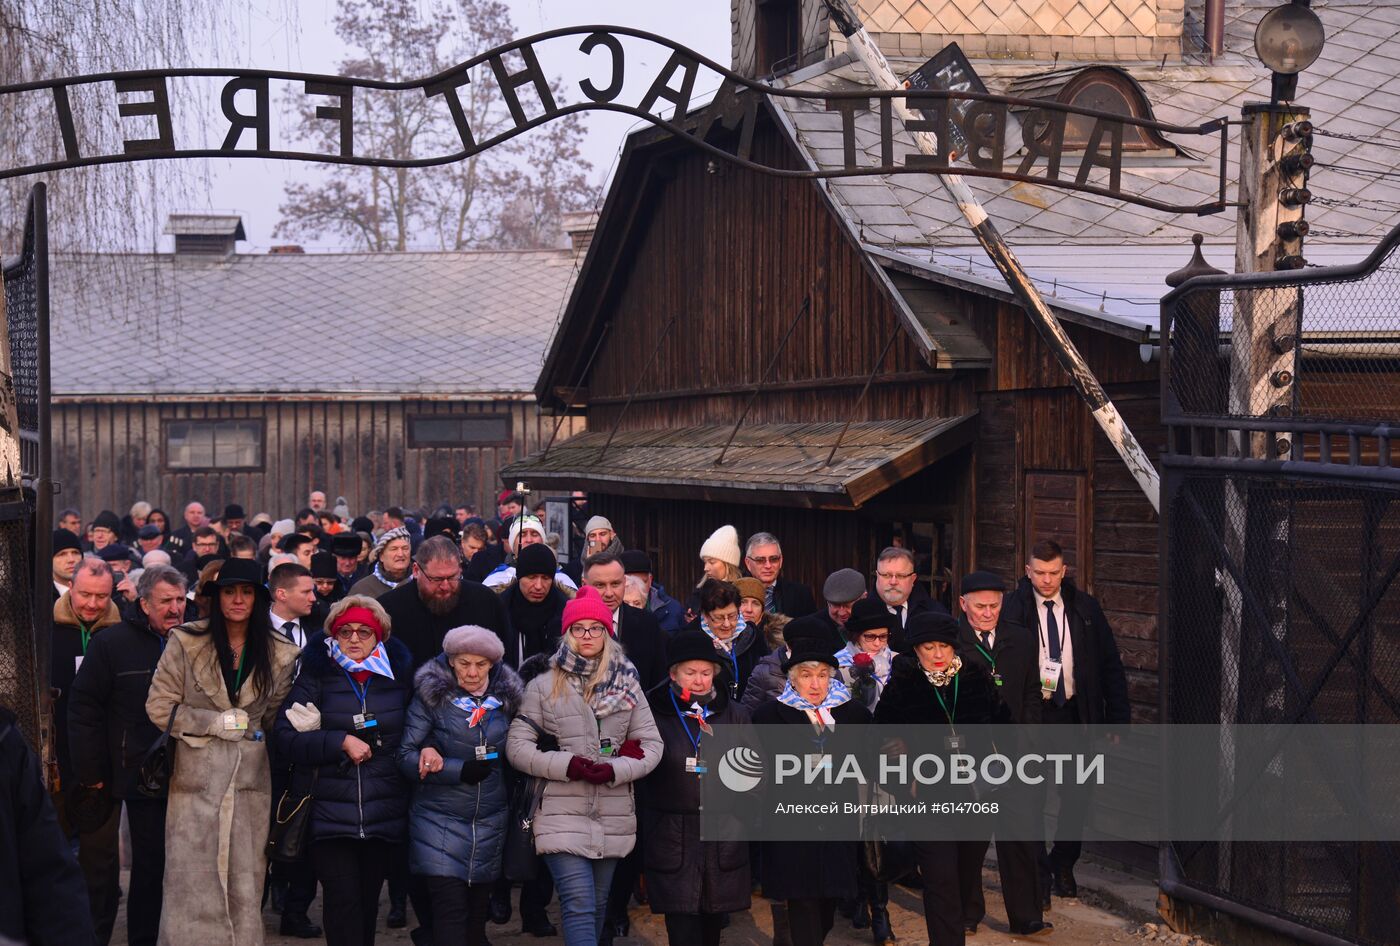 Мероприятия в честь 75-летия освобождения Освенцима